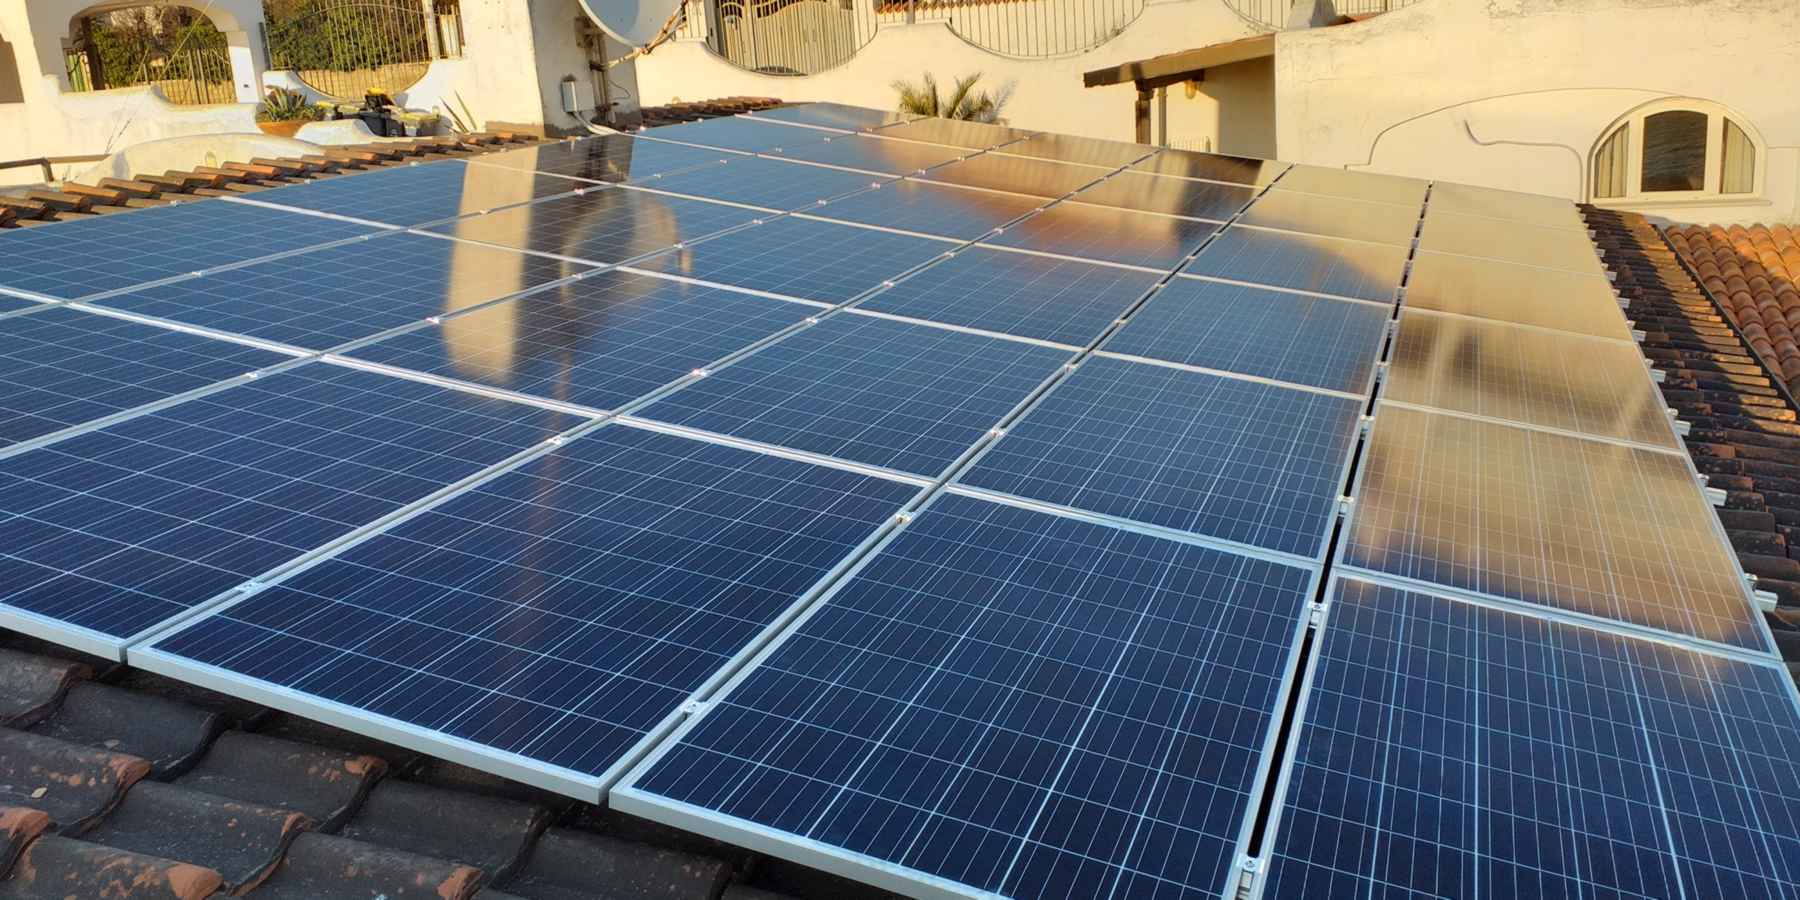 Impianto fotovoltaico al servizio Residence Elianto Anzio per soddisfare il fabbisogno energetico della struttura nel rispetto per l'ambiente